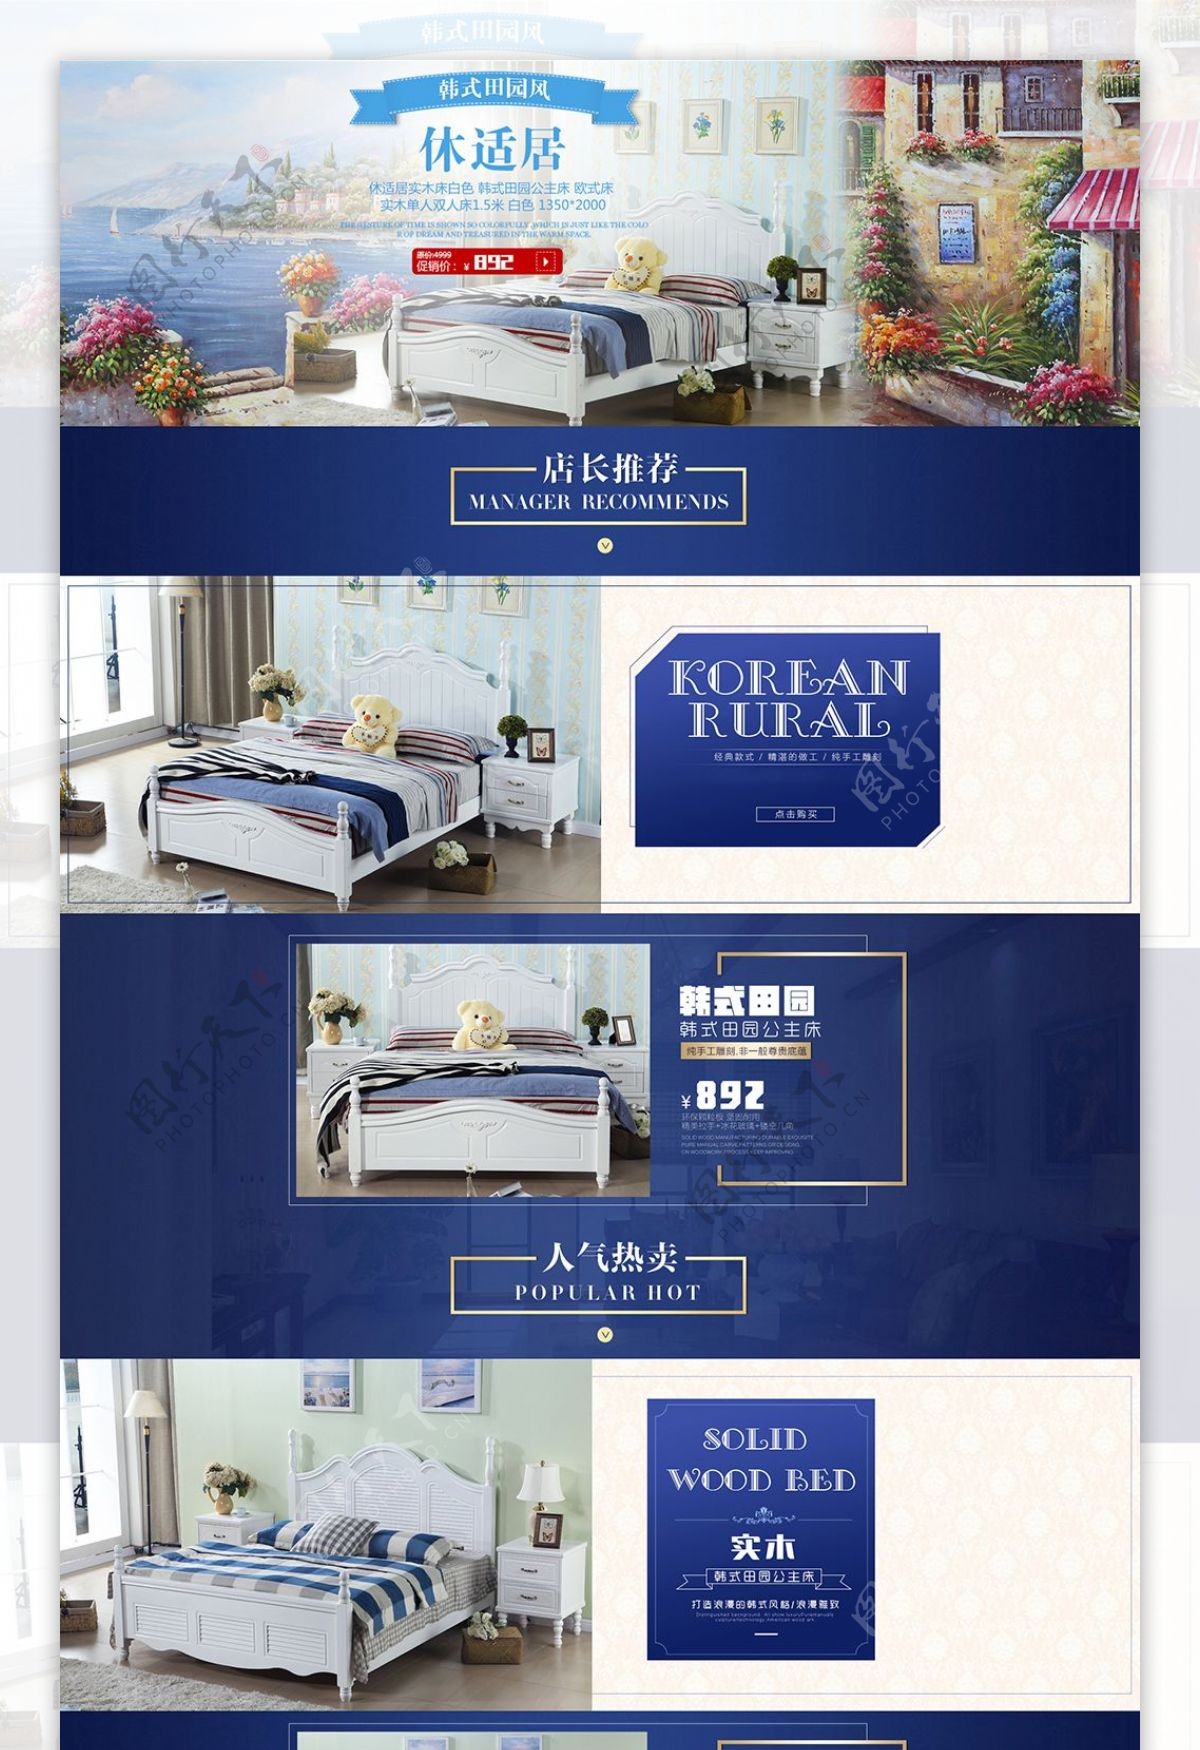 欧式家具欧式床蓝色简洁大气风格